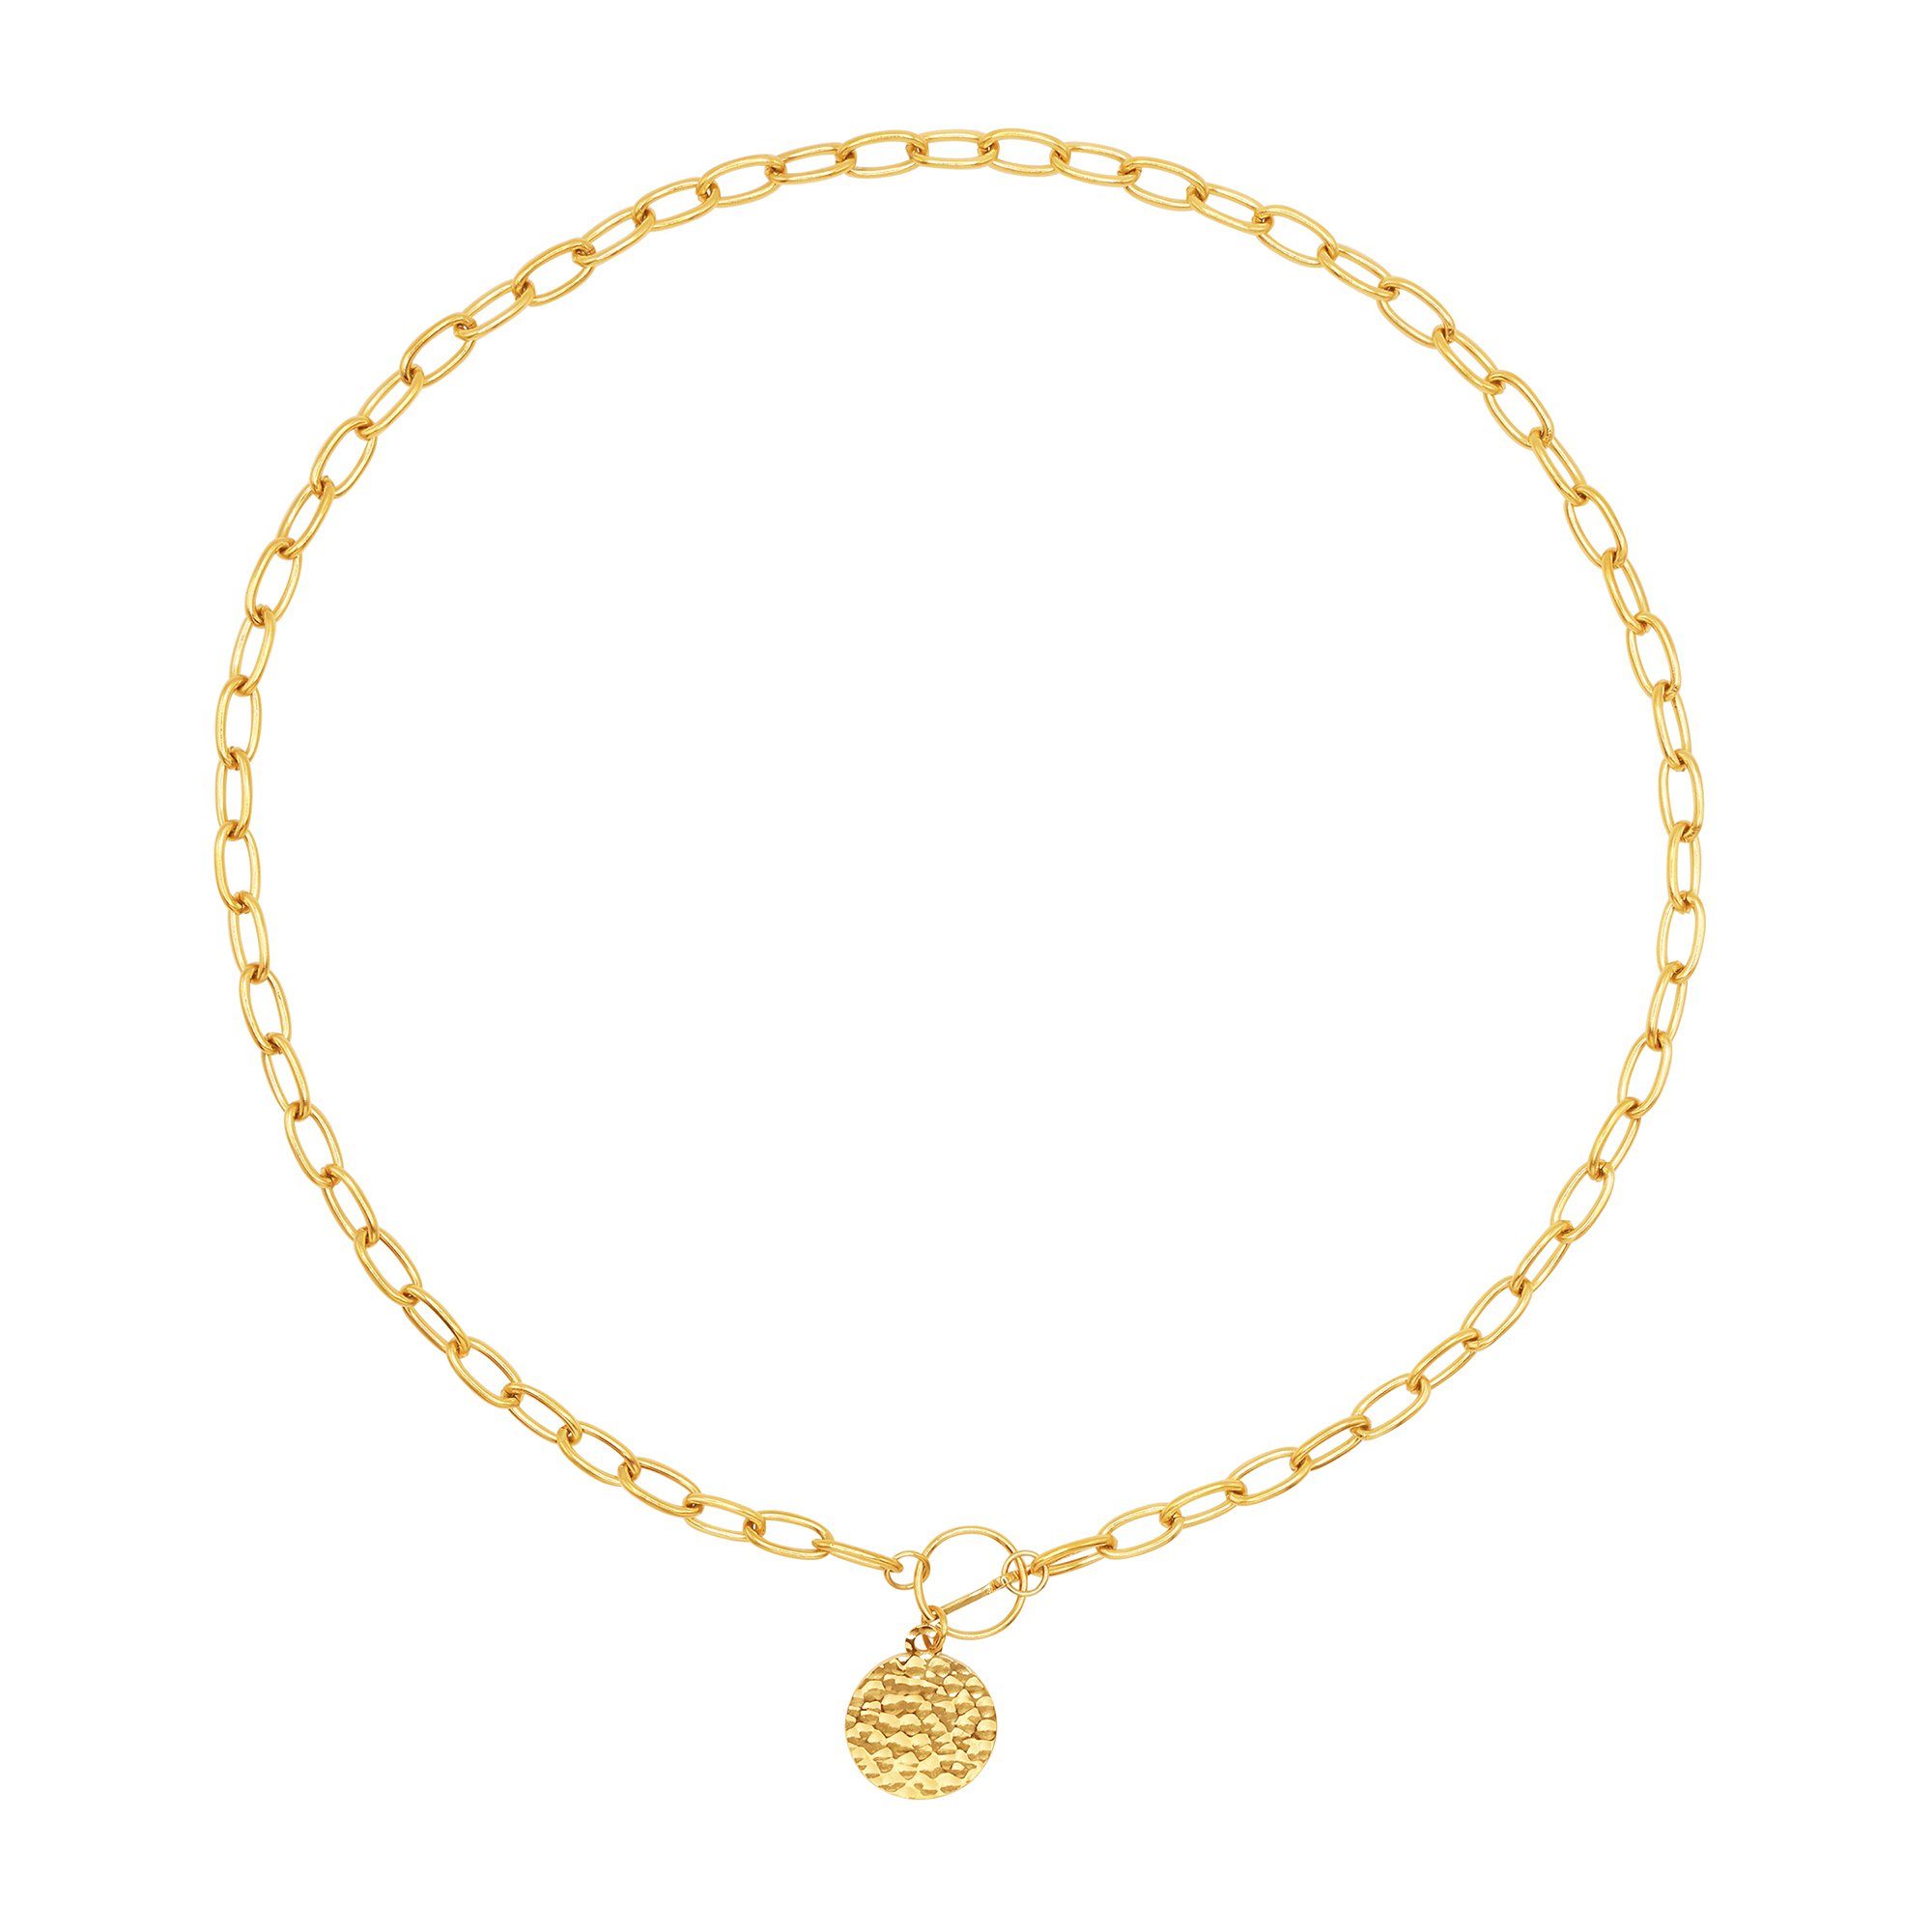 Heideman Collier Lucy (inkl. Geschenkverpackung), Frauen Halskette goldfarben